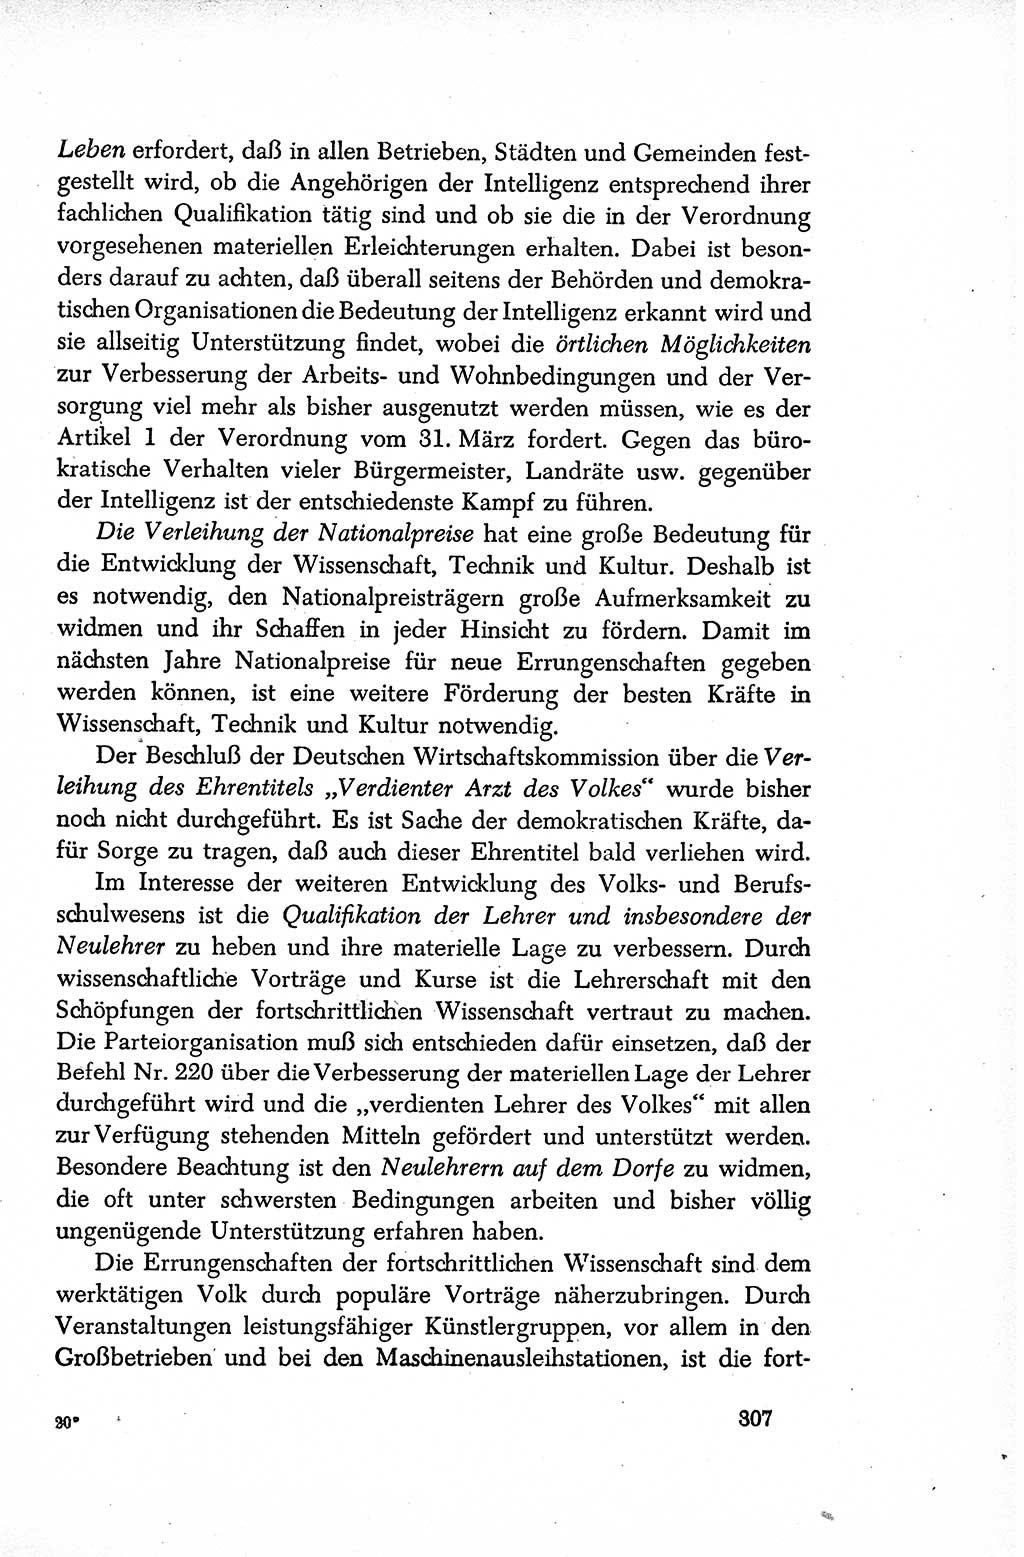 Dokumente der Sozialistischen Einheitspartei Deutschlands (SED) [Sowjetische Besatzungszone (SBZ) Deutschlands/Deutsche Demokratische Republik (DDR)] 1948-1950, Seite 307 (Dok. SED SBZ Dtl. DDR 1948-1950, S. 307)